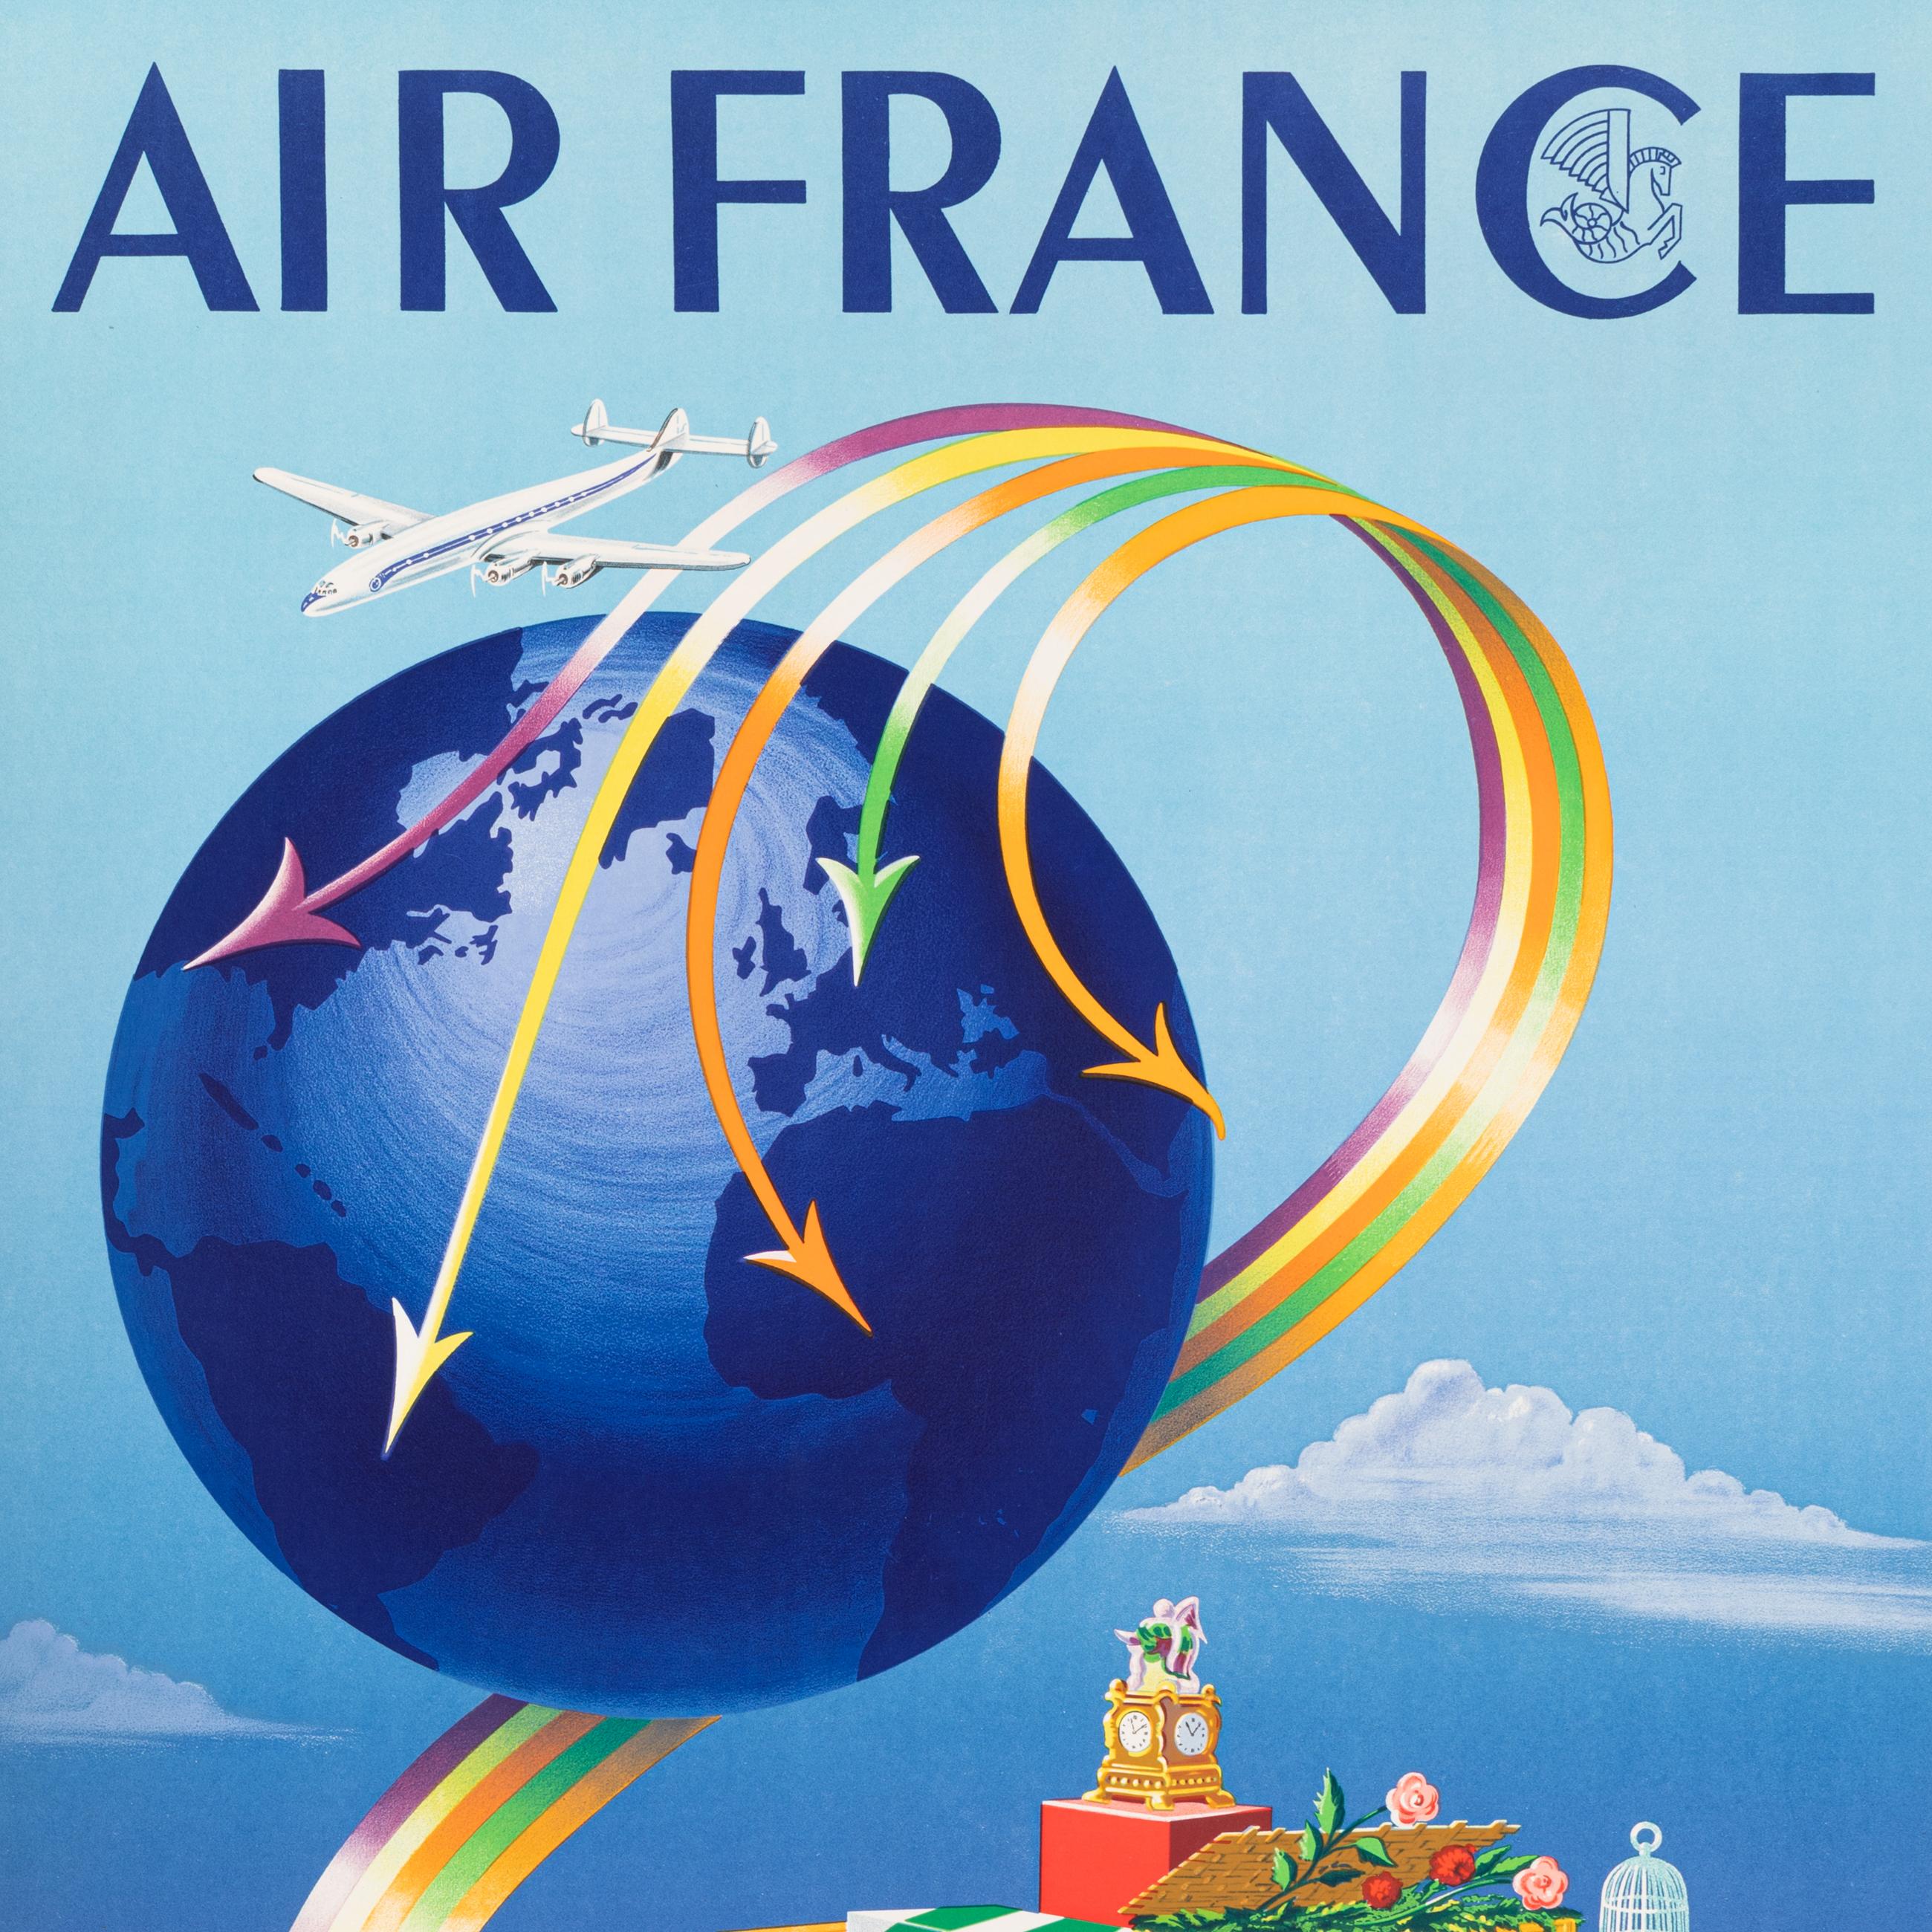 Original Vintage Poster für Air France von Alphonse Dehedin aus dem Jahr 1952.

Künstler: Dehedin Alphonse
Titel: Air France - Transporte tout, Partout
Datum: 1952
Größe (B x H): 24,6x 39.4 in / 62 x 100 cm
Drucker : Perceval_Paris
MATERIALIEN und